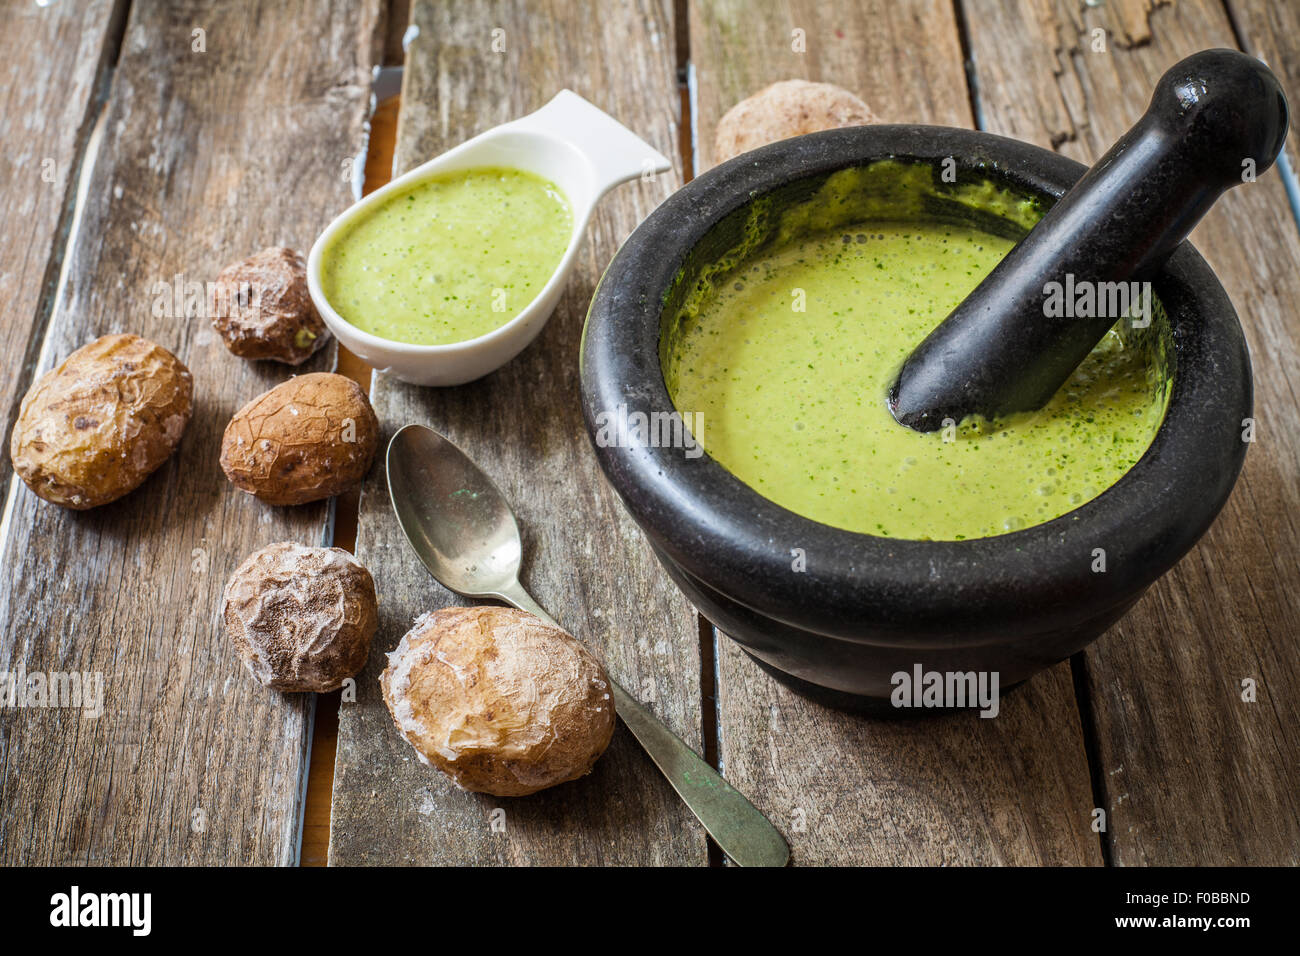 canary style potato with coriander sauce called green mojo Stock Photo